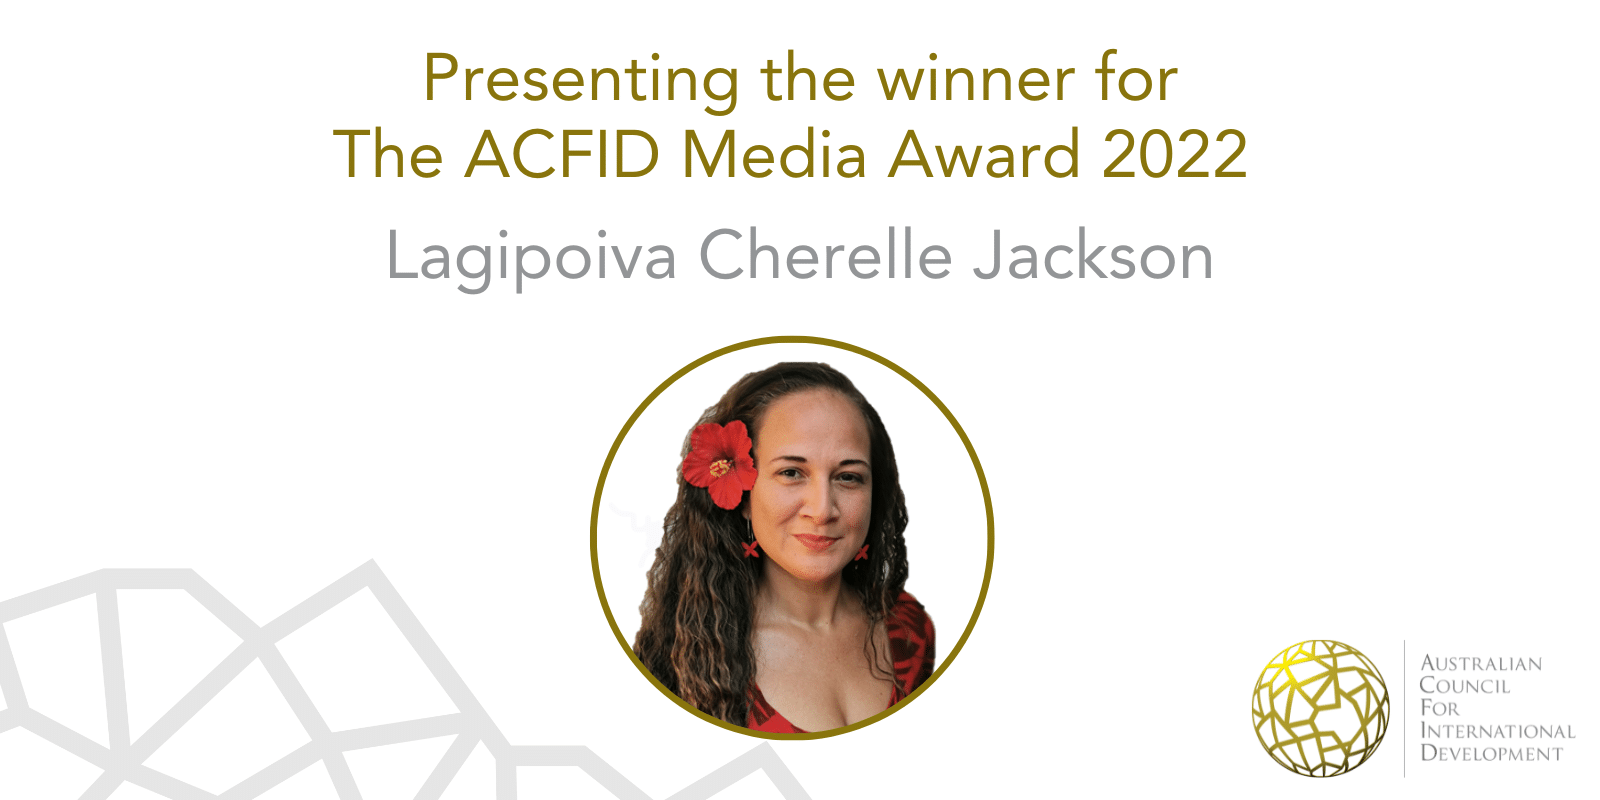 Presenting the winner for the ACFID Media Award 2022: Lagipoiva Cherelle Jackson